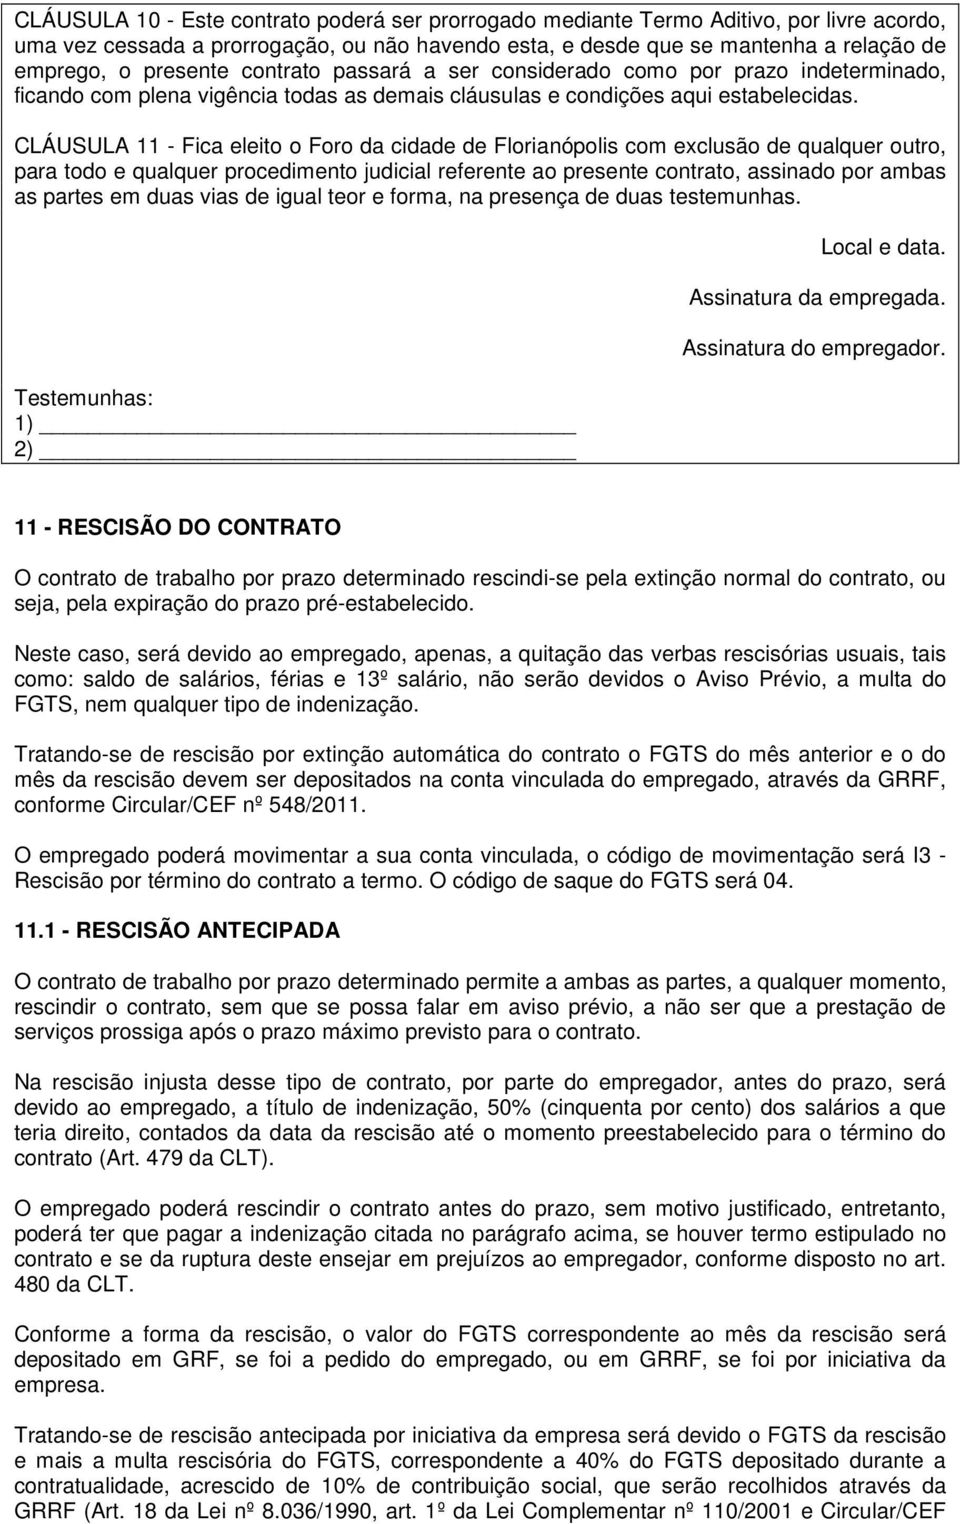 CLÁUSULA 11 - Fica eleito o Foro da cidade de Florianópolis com exclusão de qualquer outro, para todo e qualquer procedimento judicial referente ao presente contrato, assinado por ambas as partes em